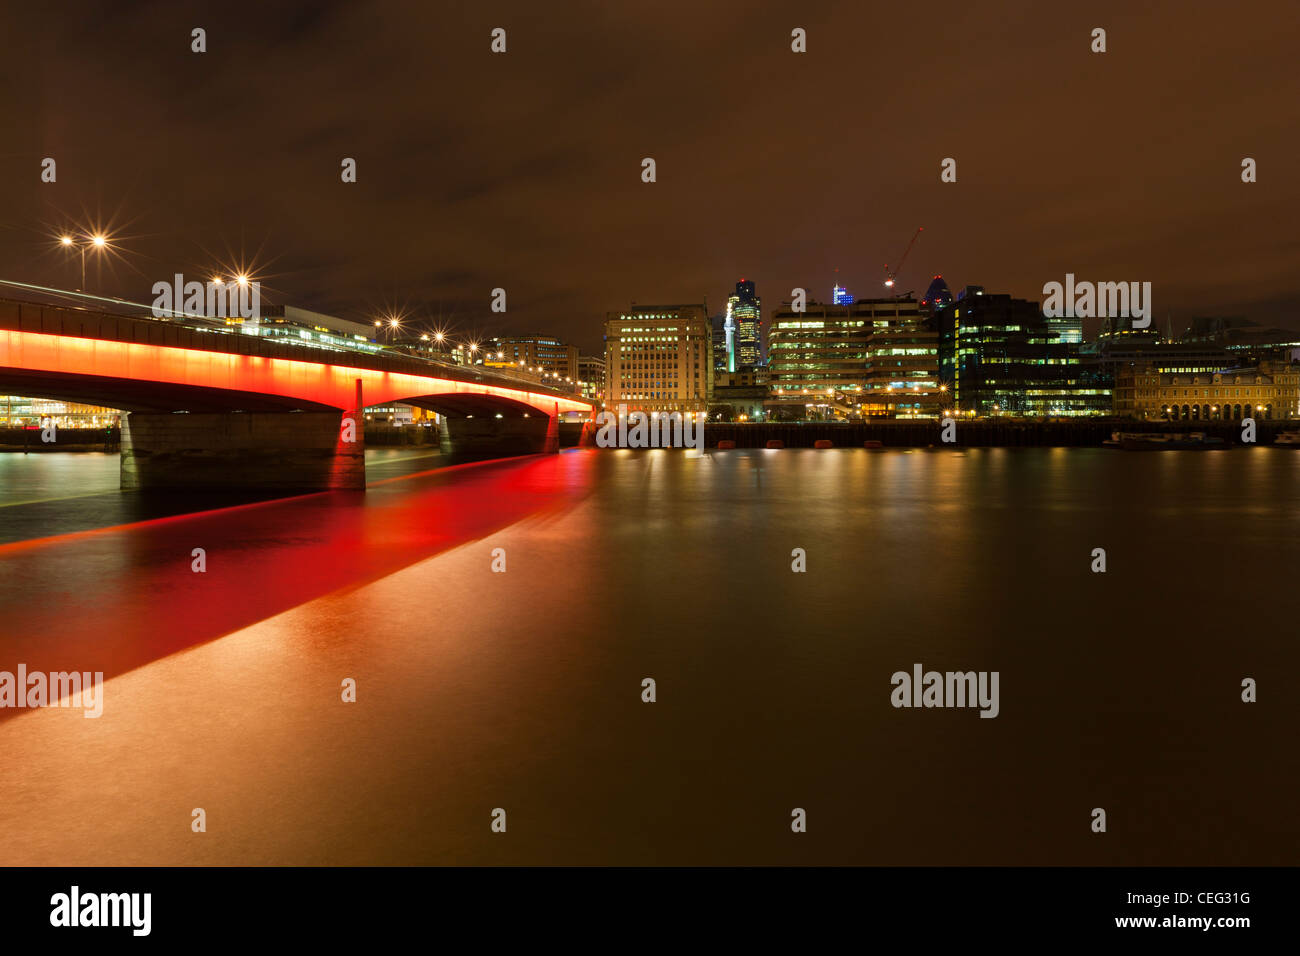 Londra ponte sul fiume Thames, London, England, Regno Unito, Europa Foto Stock